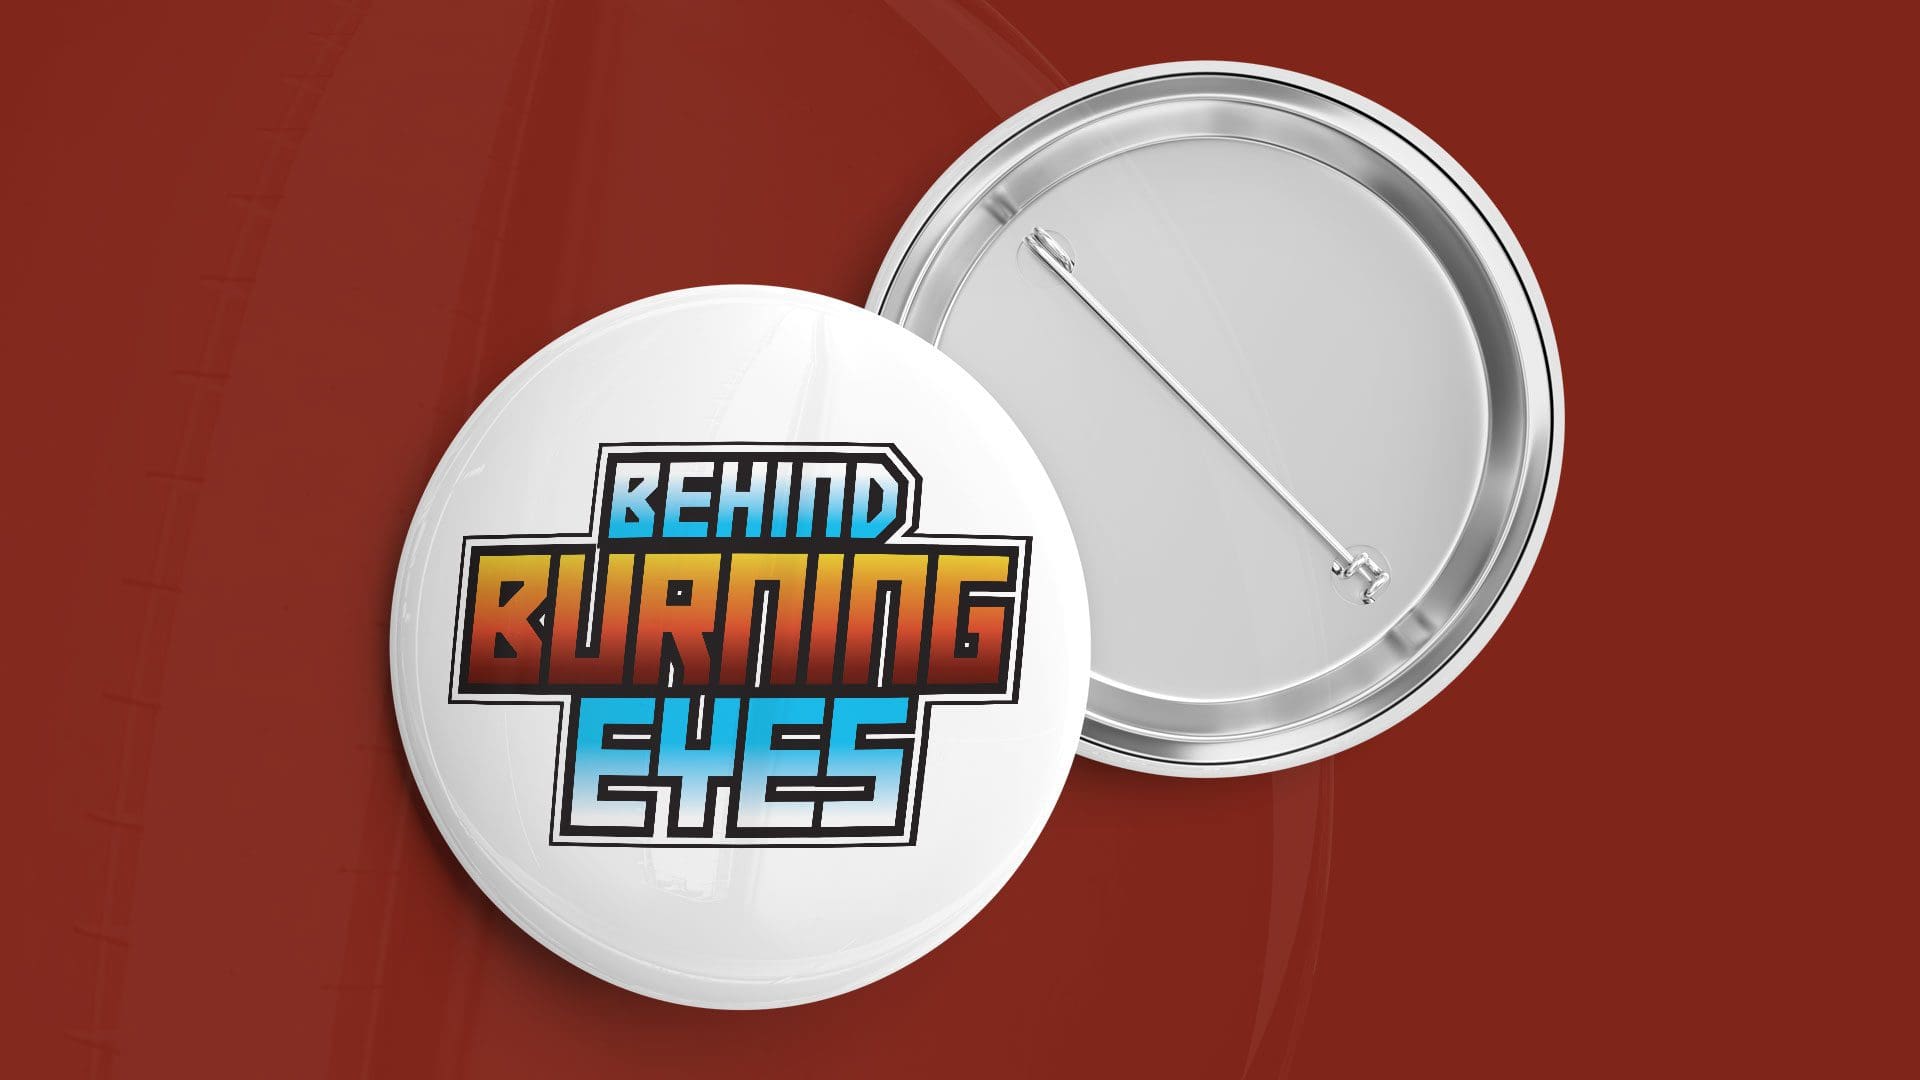 Behind Burning Eyes - Logo Mockup 03